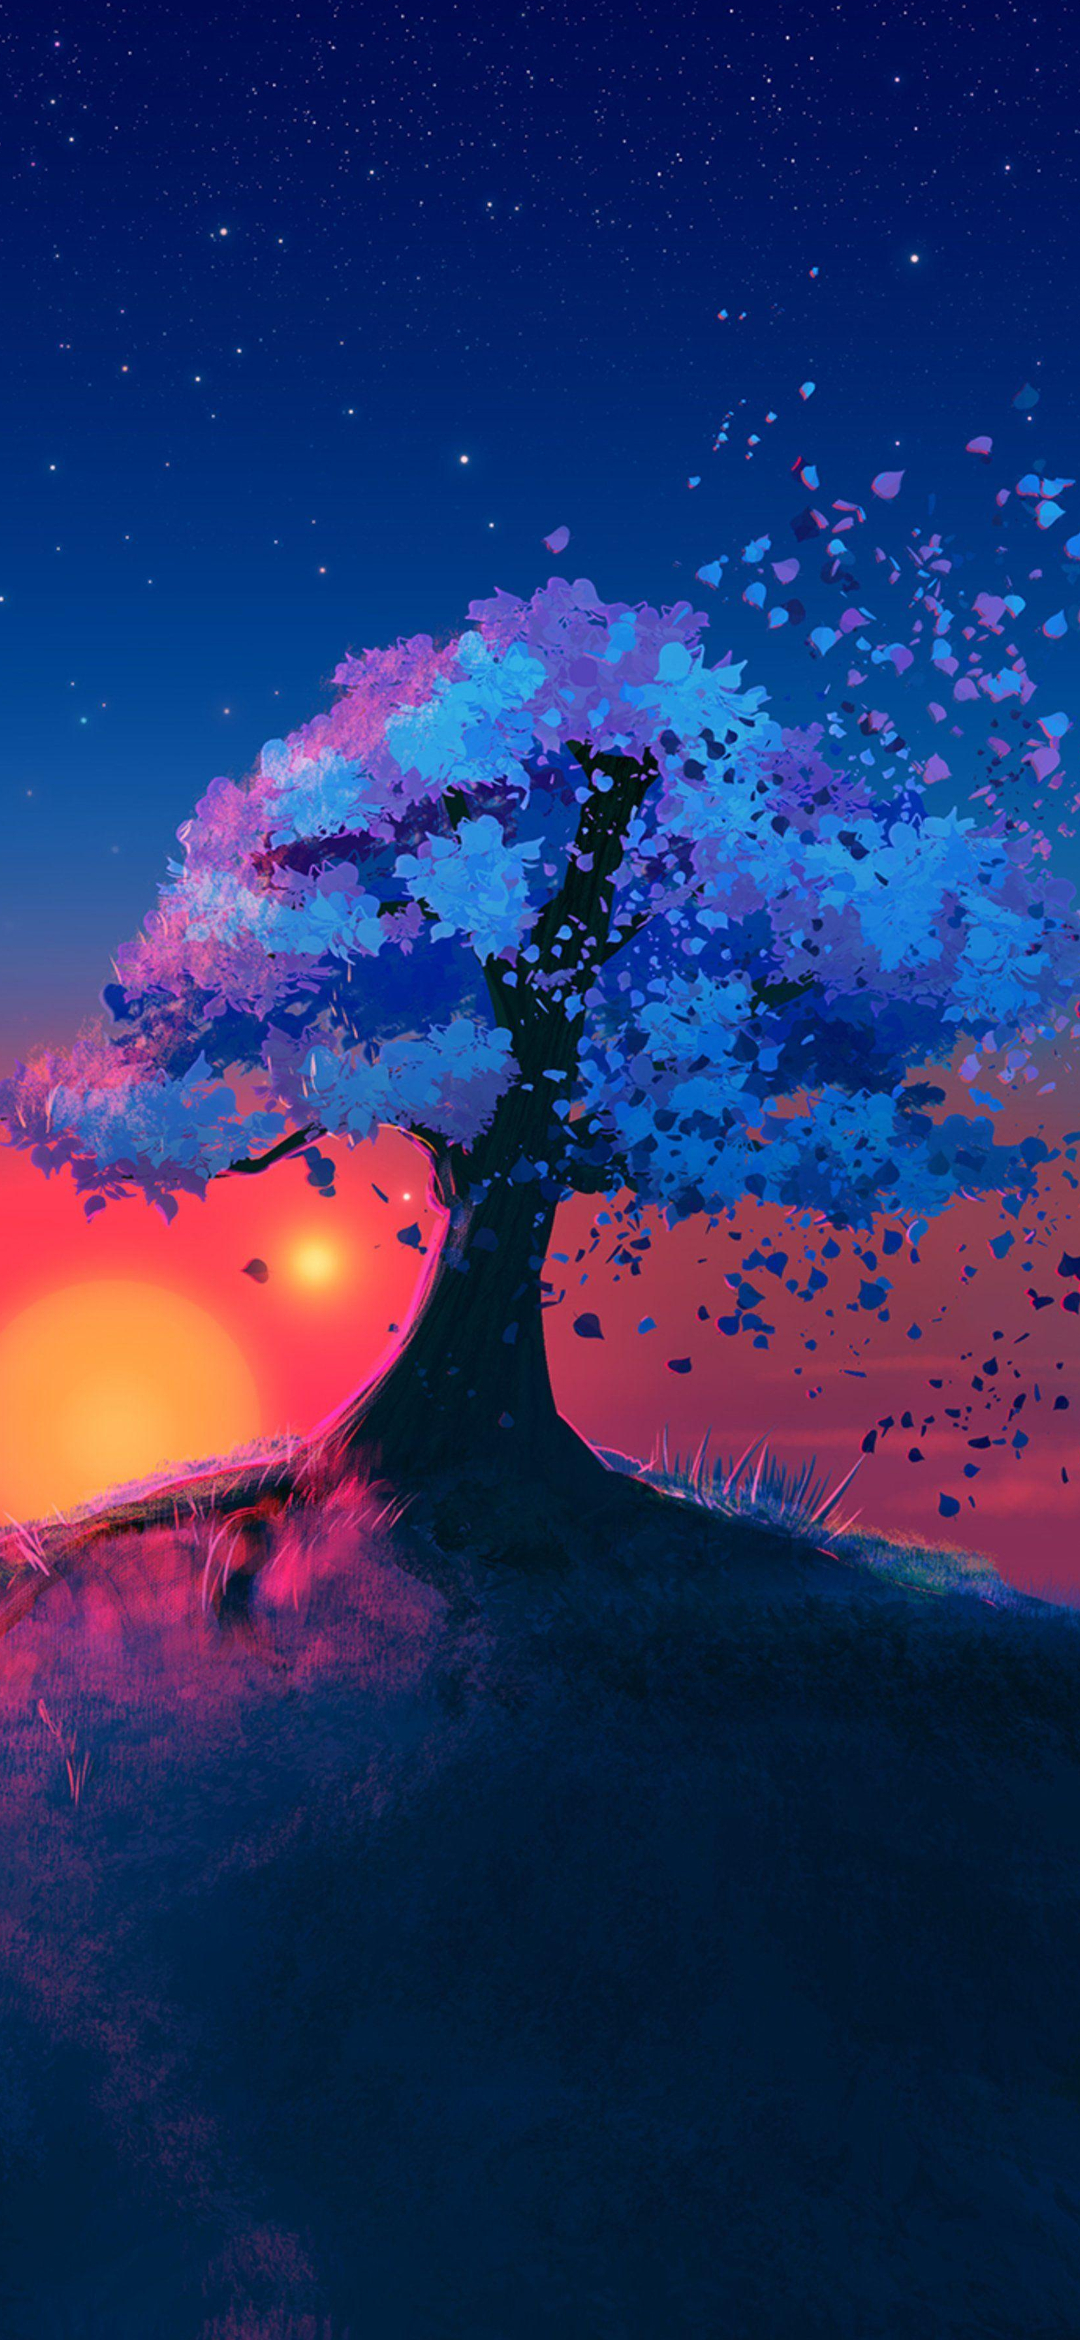 綺麗な木と青の星空のイラスト Find X Android 壁紙 待ち受け スマラン